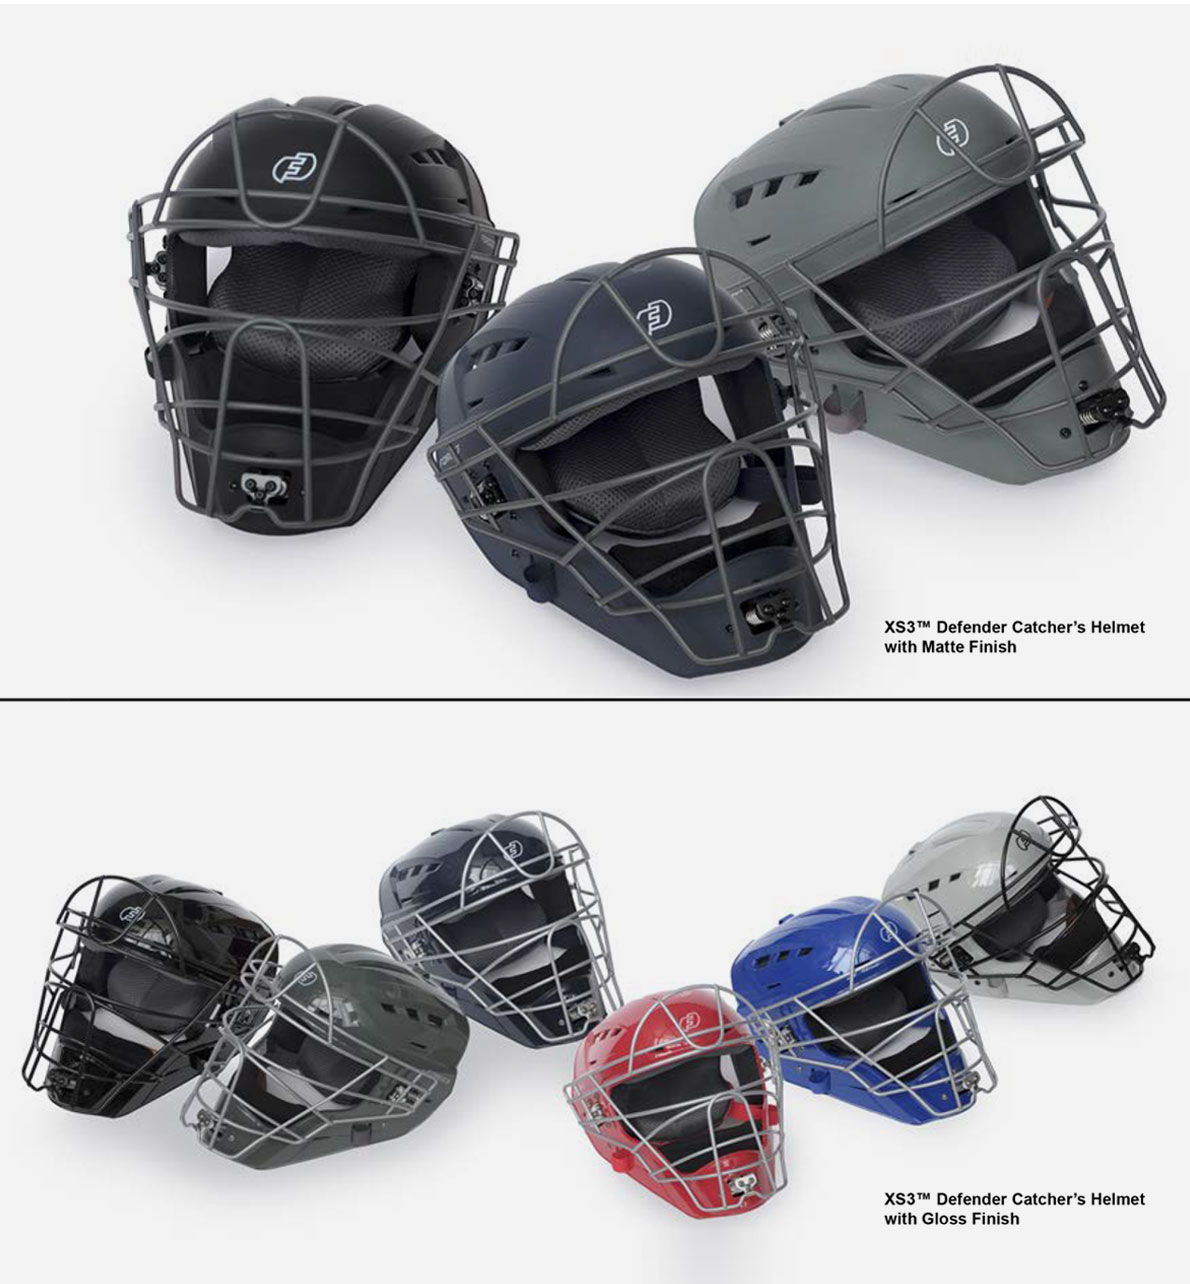 Introducing The Xs3 Defender Catcher’s Helmet